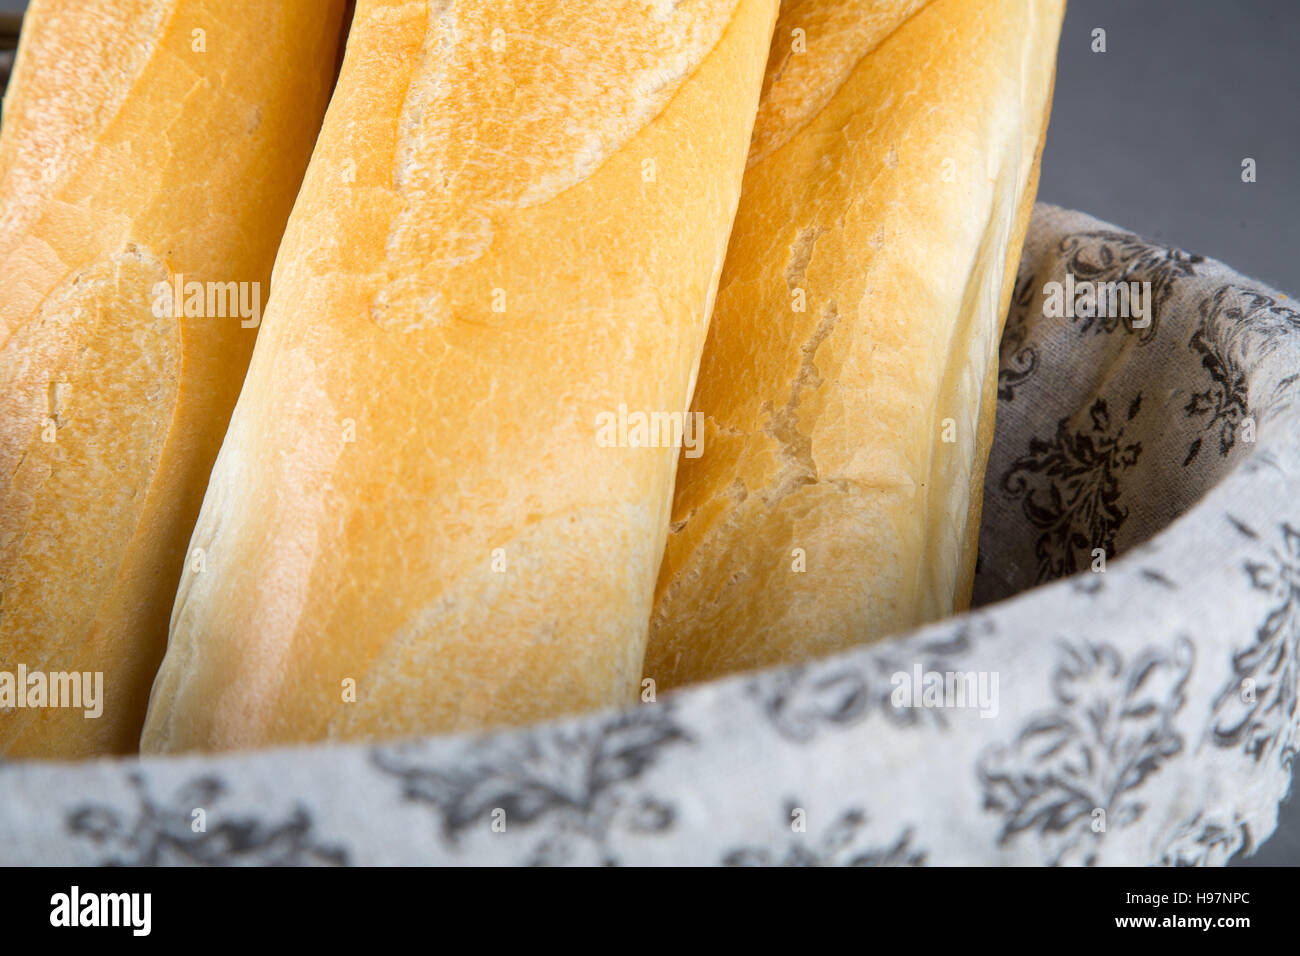 Panier avec du pain français (baguette) Banque D'Images